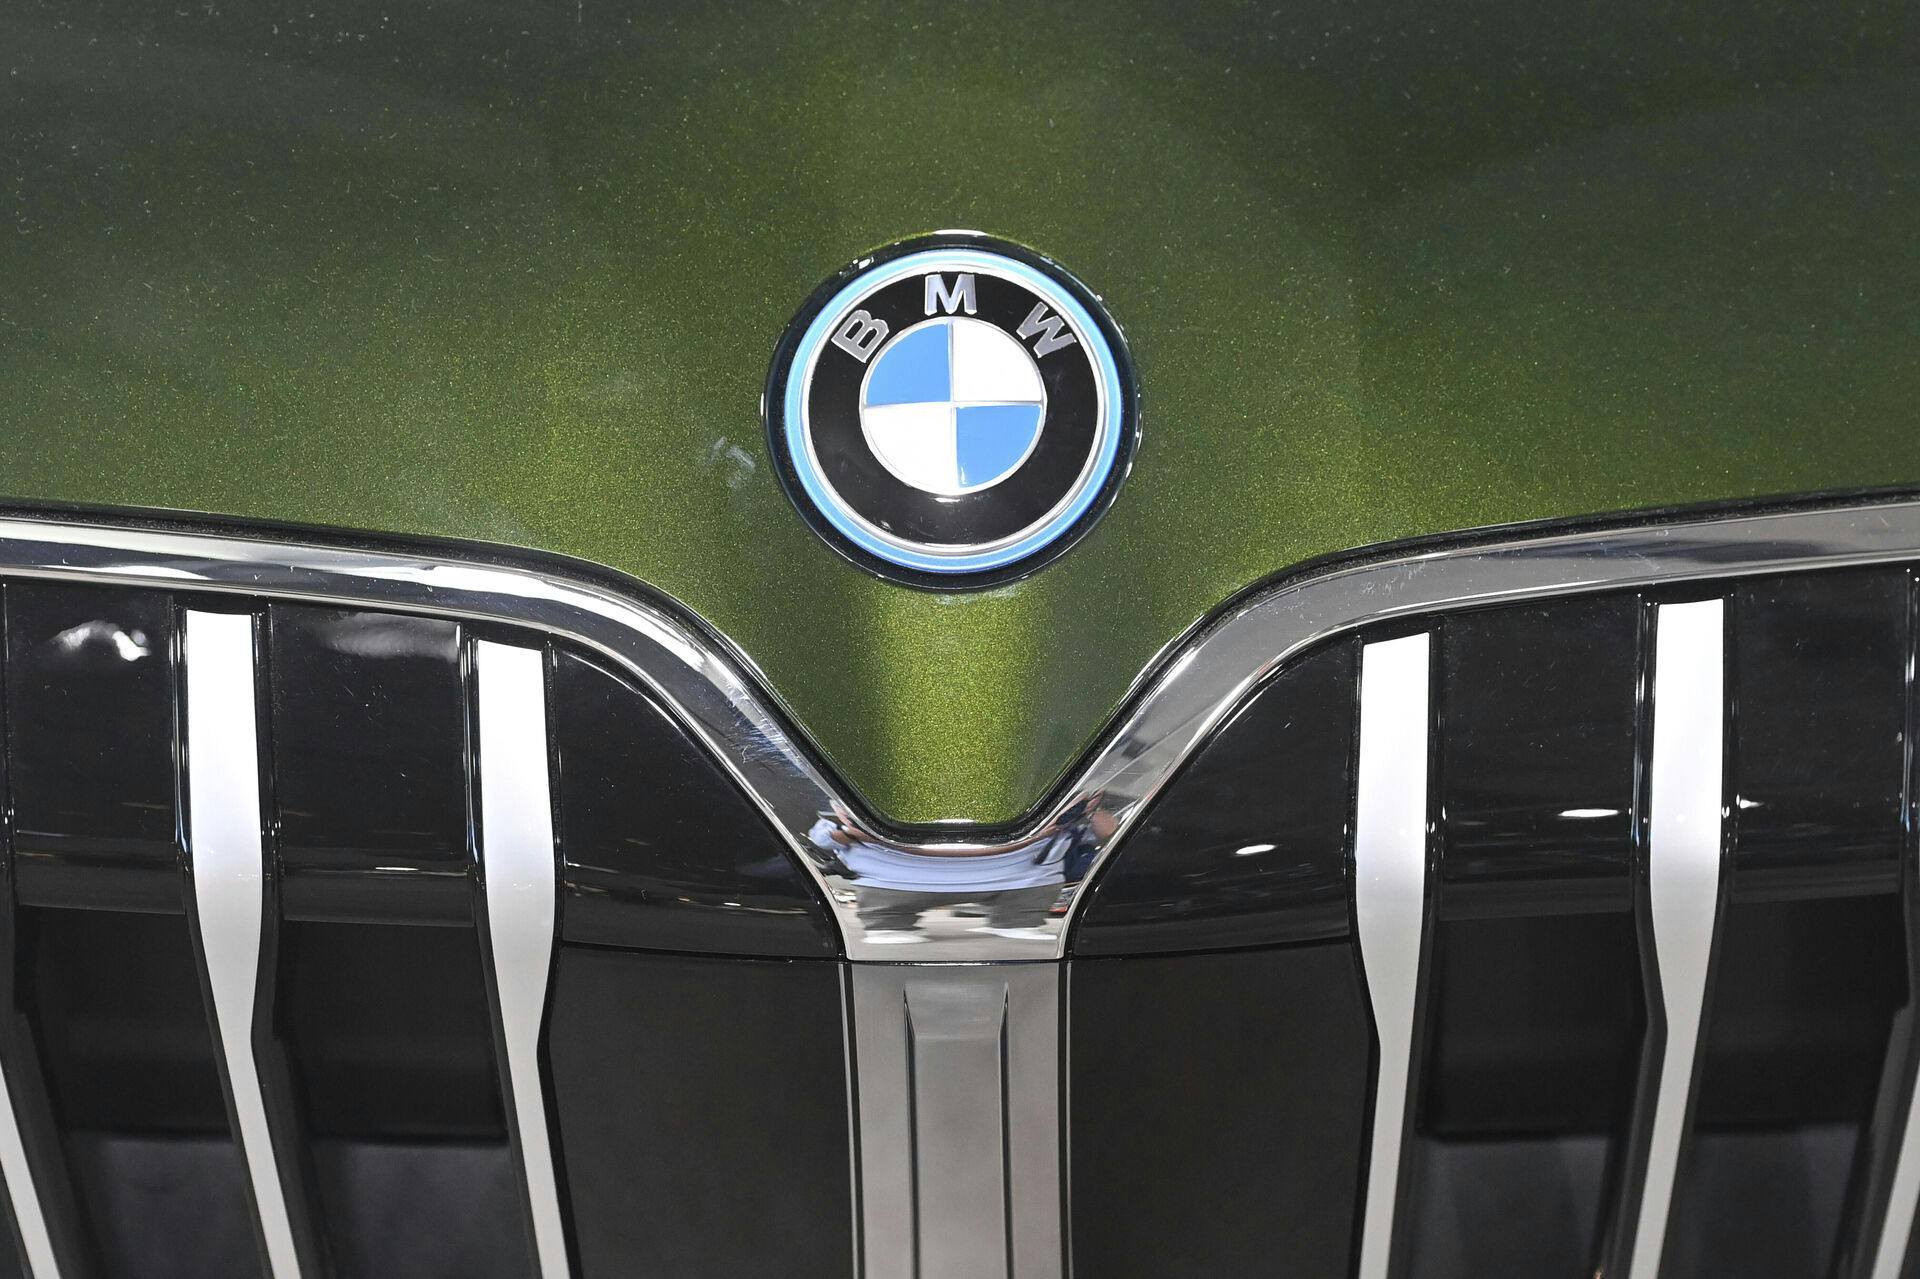 Verdens mest bæredygtige bilmærke? Nej, det passer ikke, mener den danske forbrugerombudsmand, der nu har politianmeldt BMW.